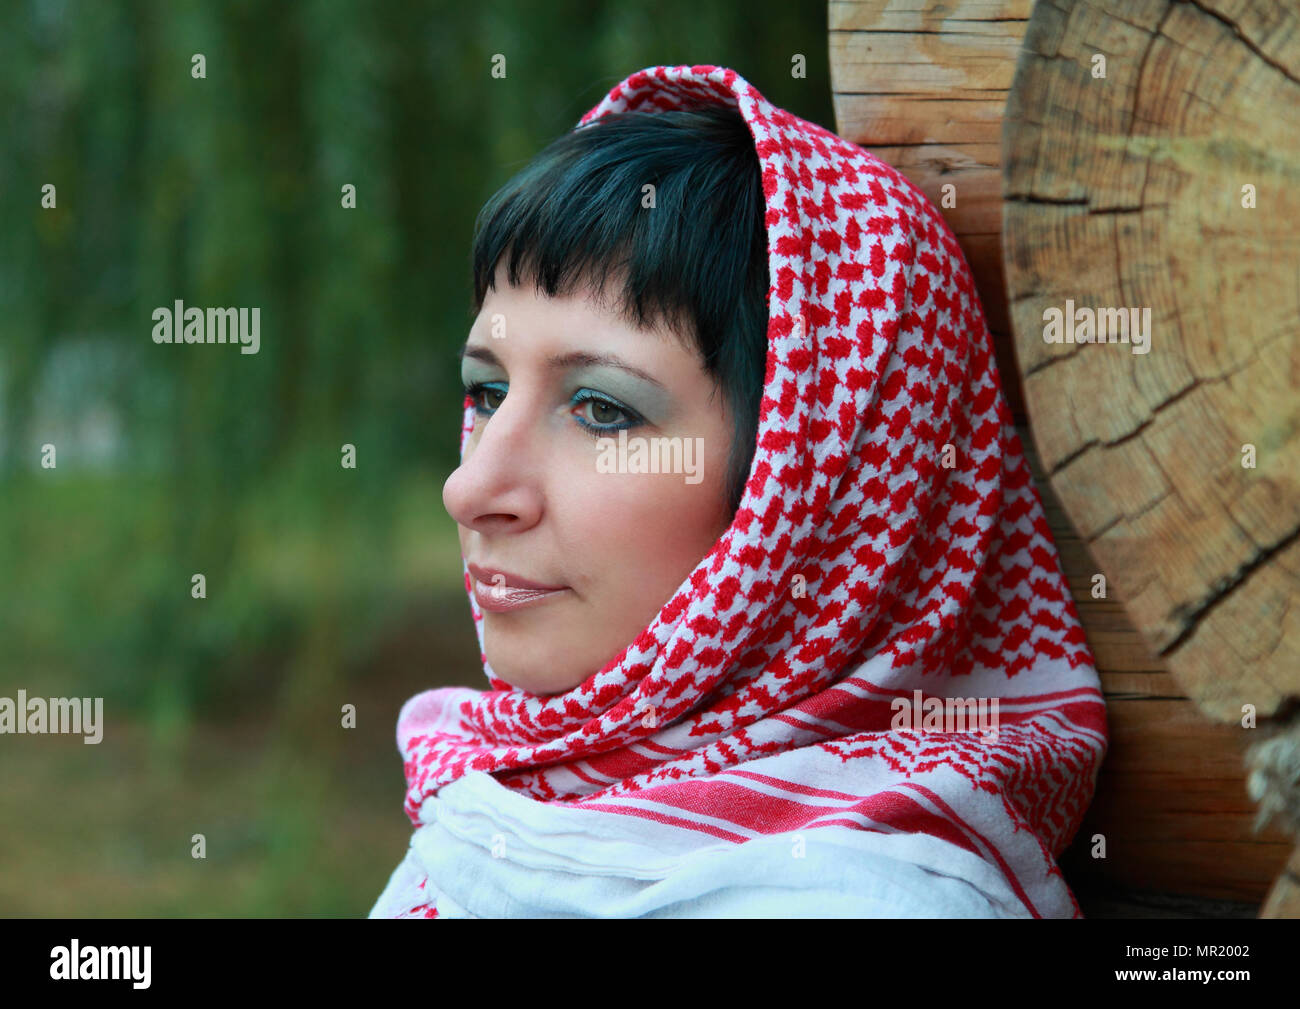 Junge Mädchen mit einem Tuch auf dem Kopf in einem Holzhaus Stockfotografie  - Alamy